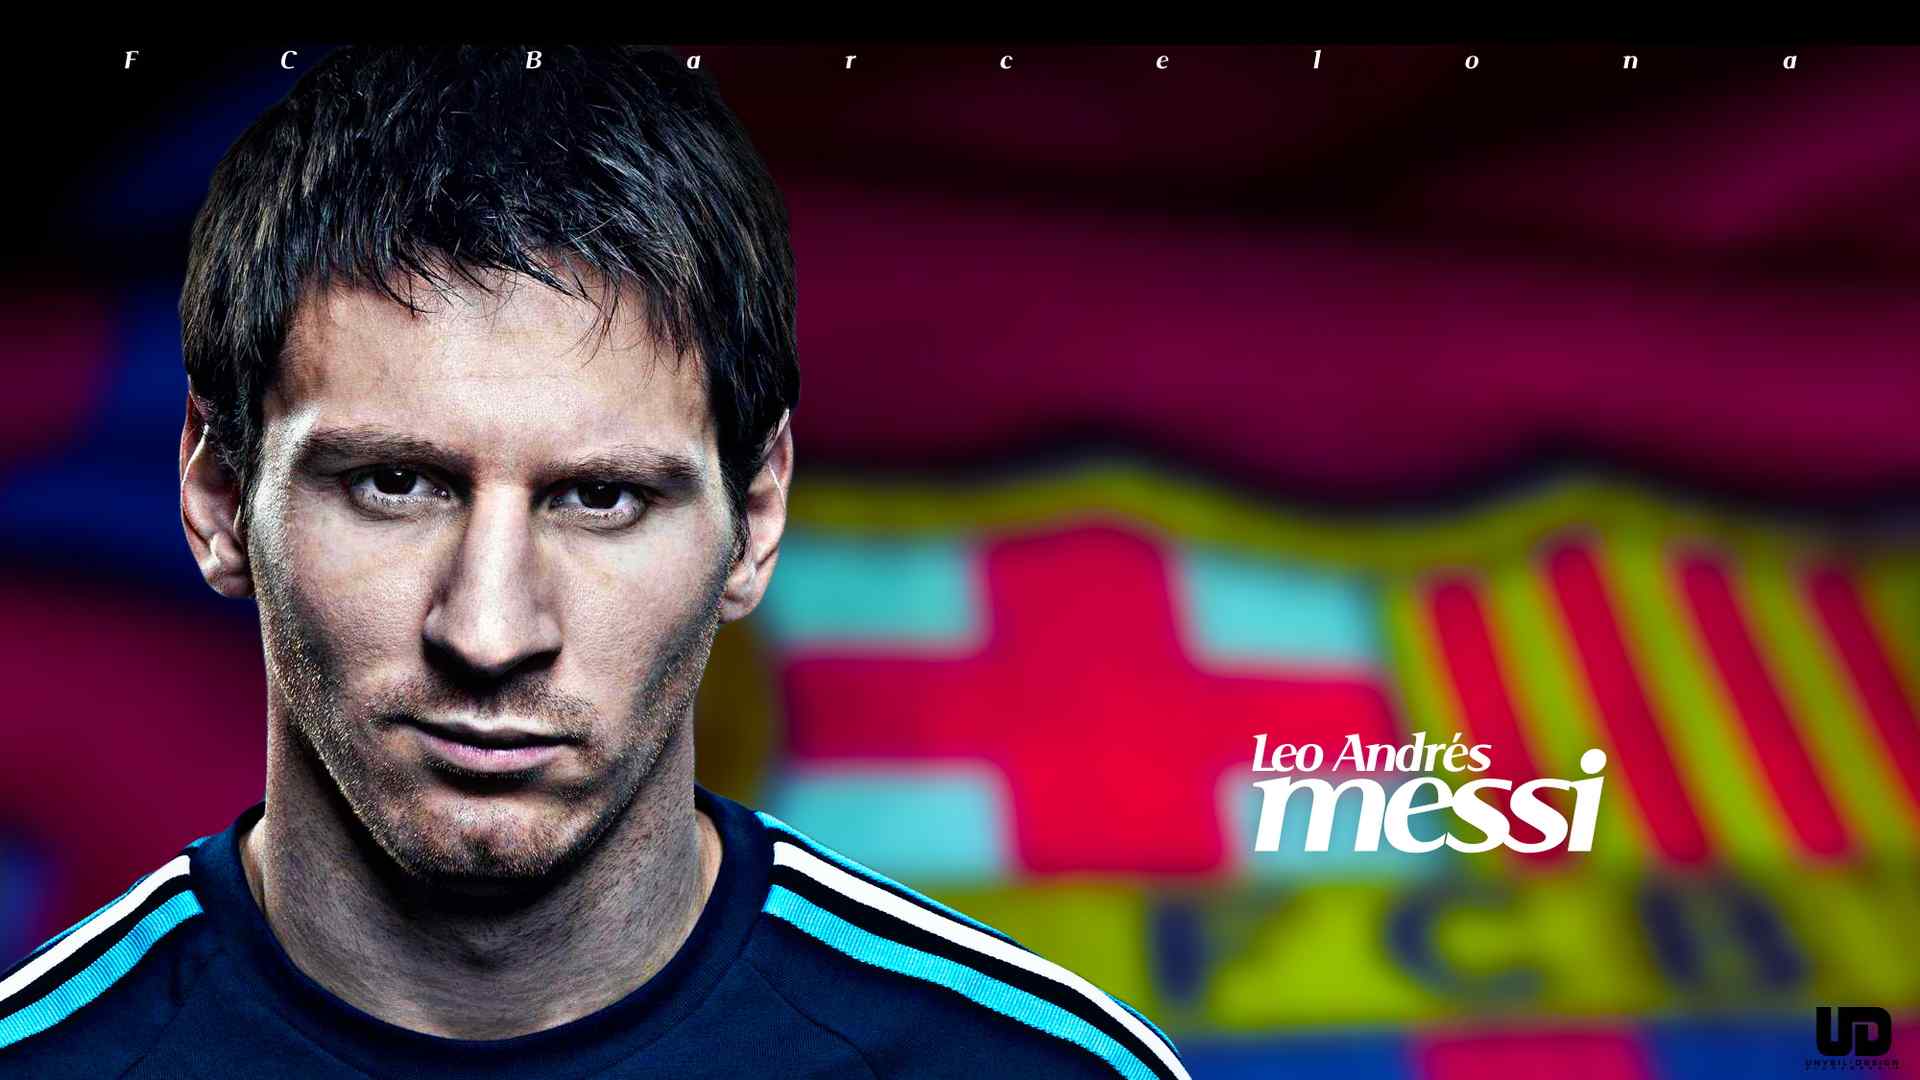 梅西壁纸世界杯阿根廷足球明星梅西帅气写真桌面壁纸